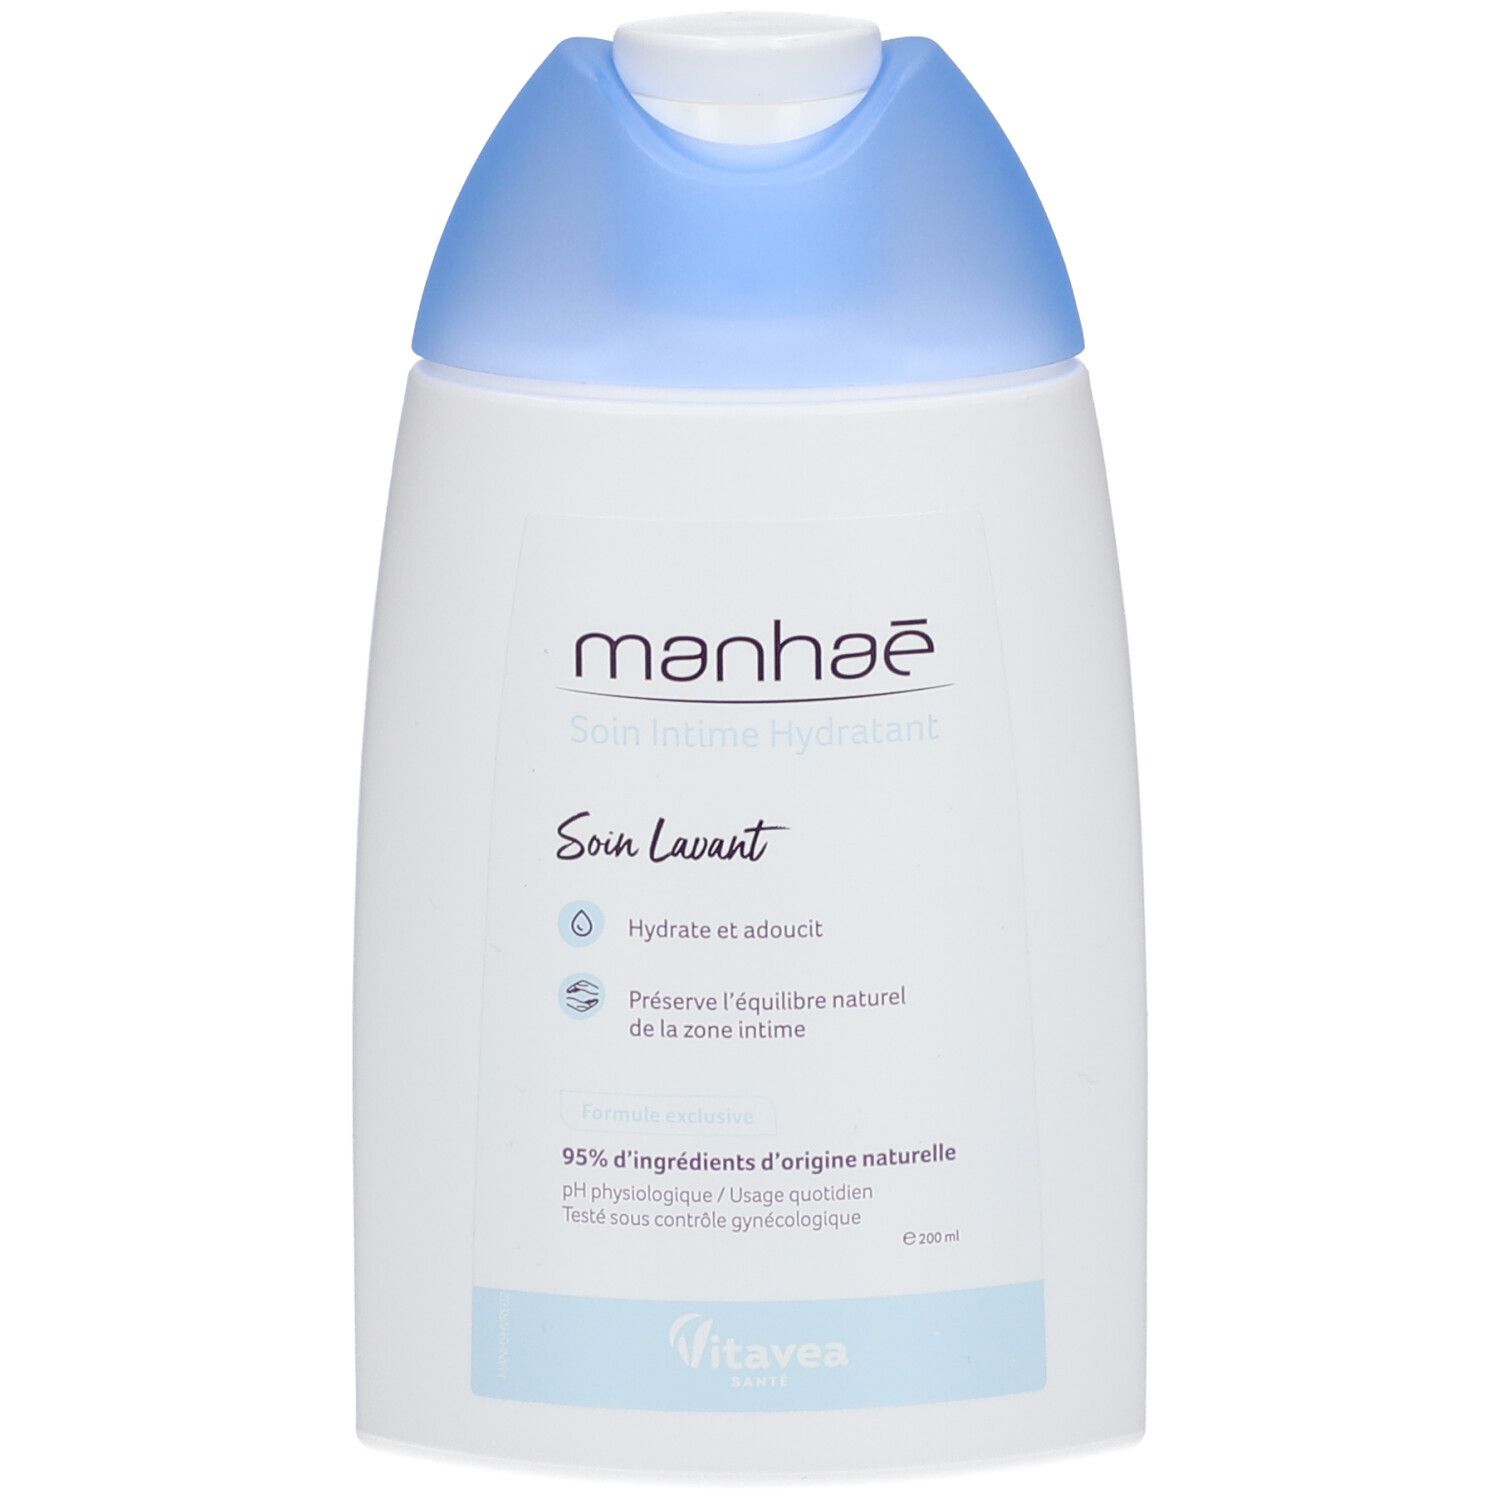 Manhaé Soin intime lavant hydratant